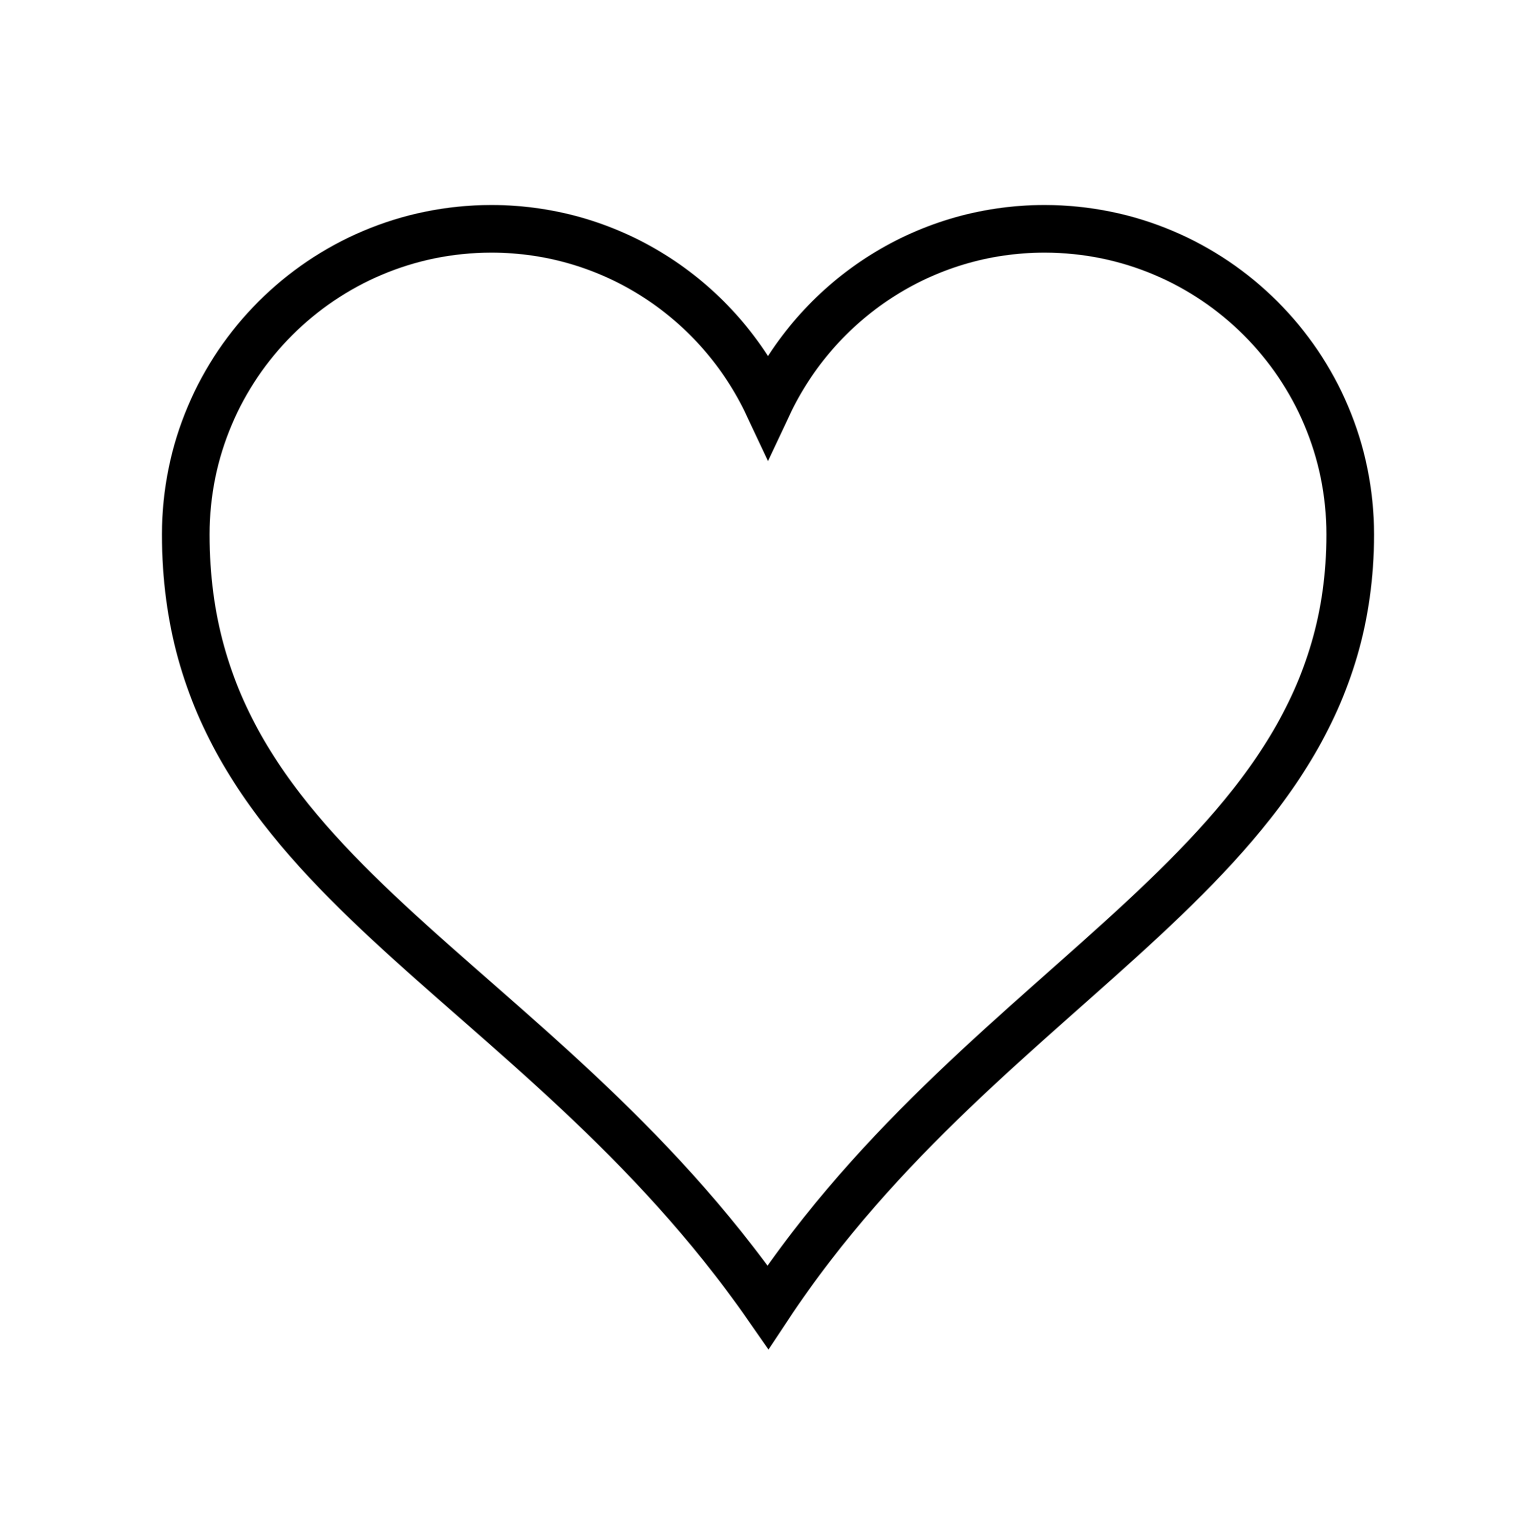 Контур скопировать. Белое сердце. Сердечко контур. Сердце на белом фоне контур. Сердечко очертание.